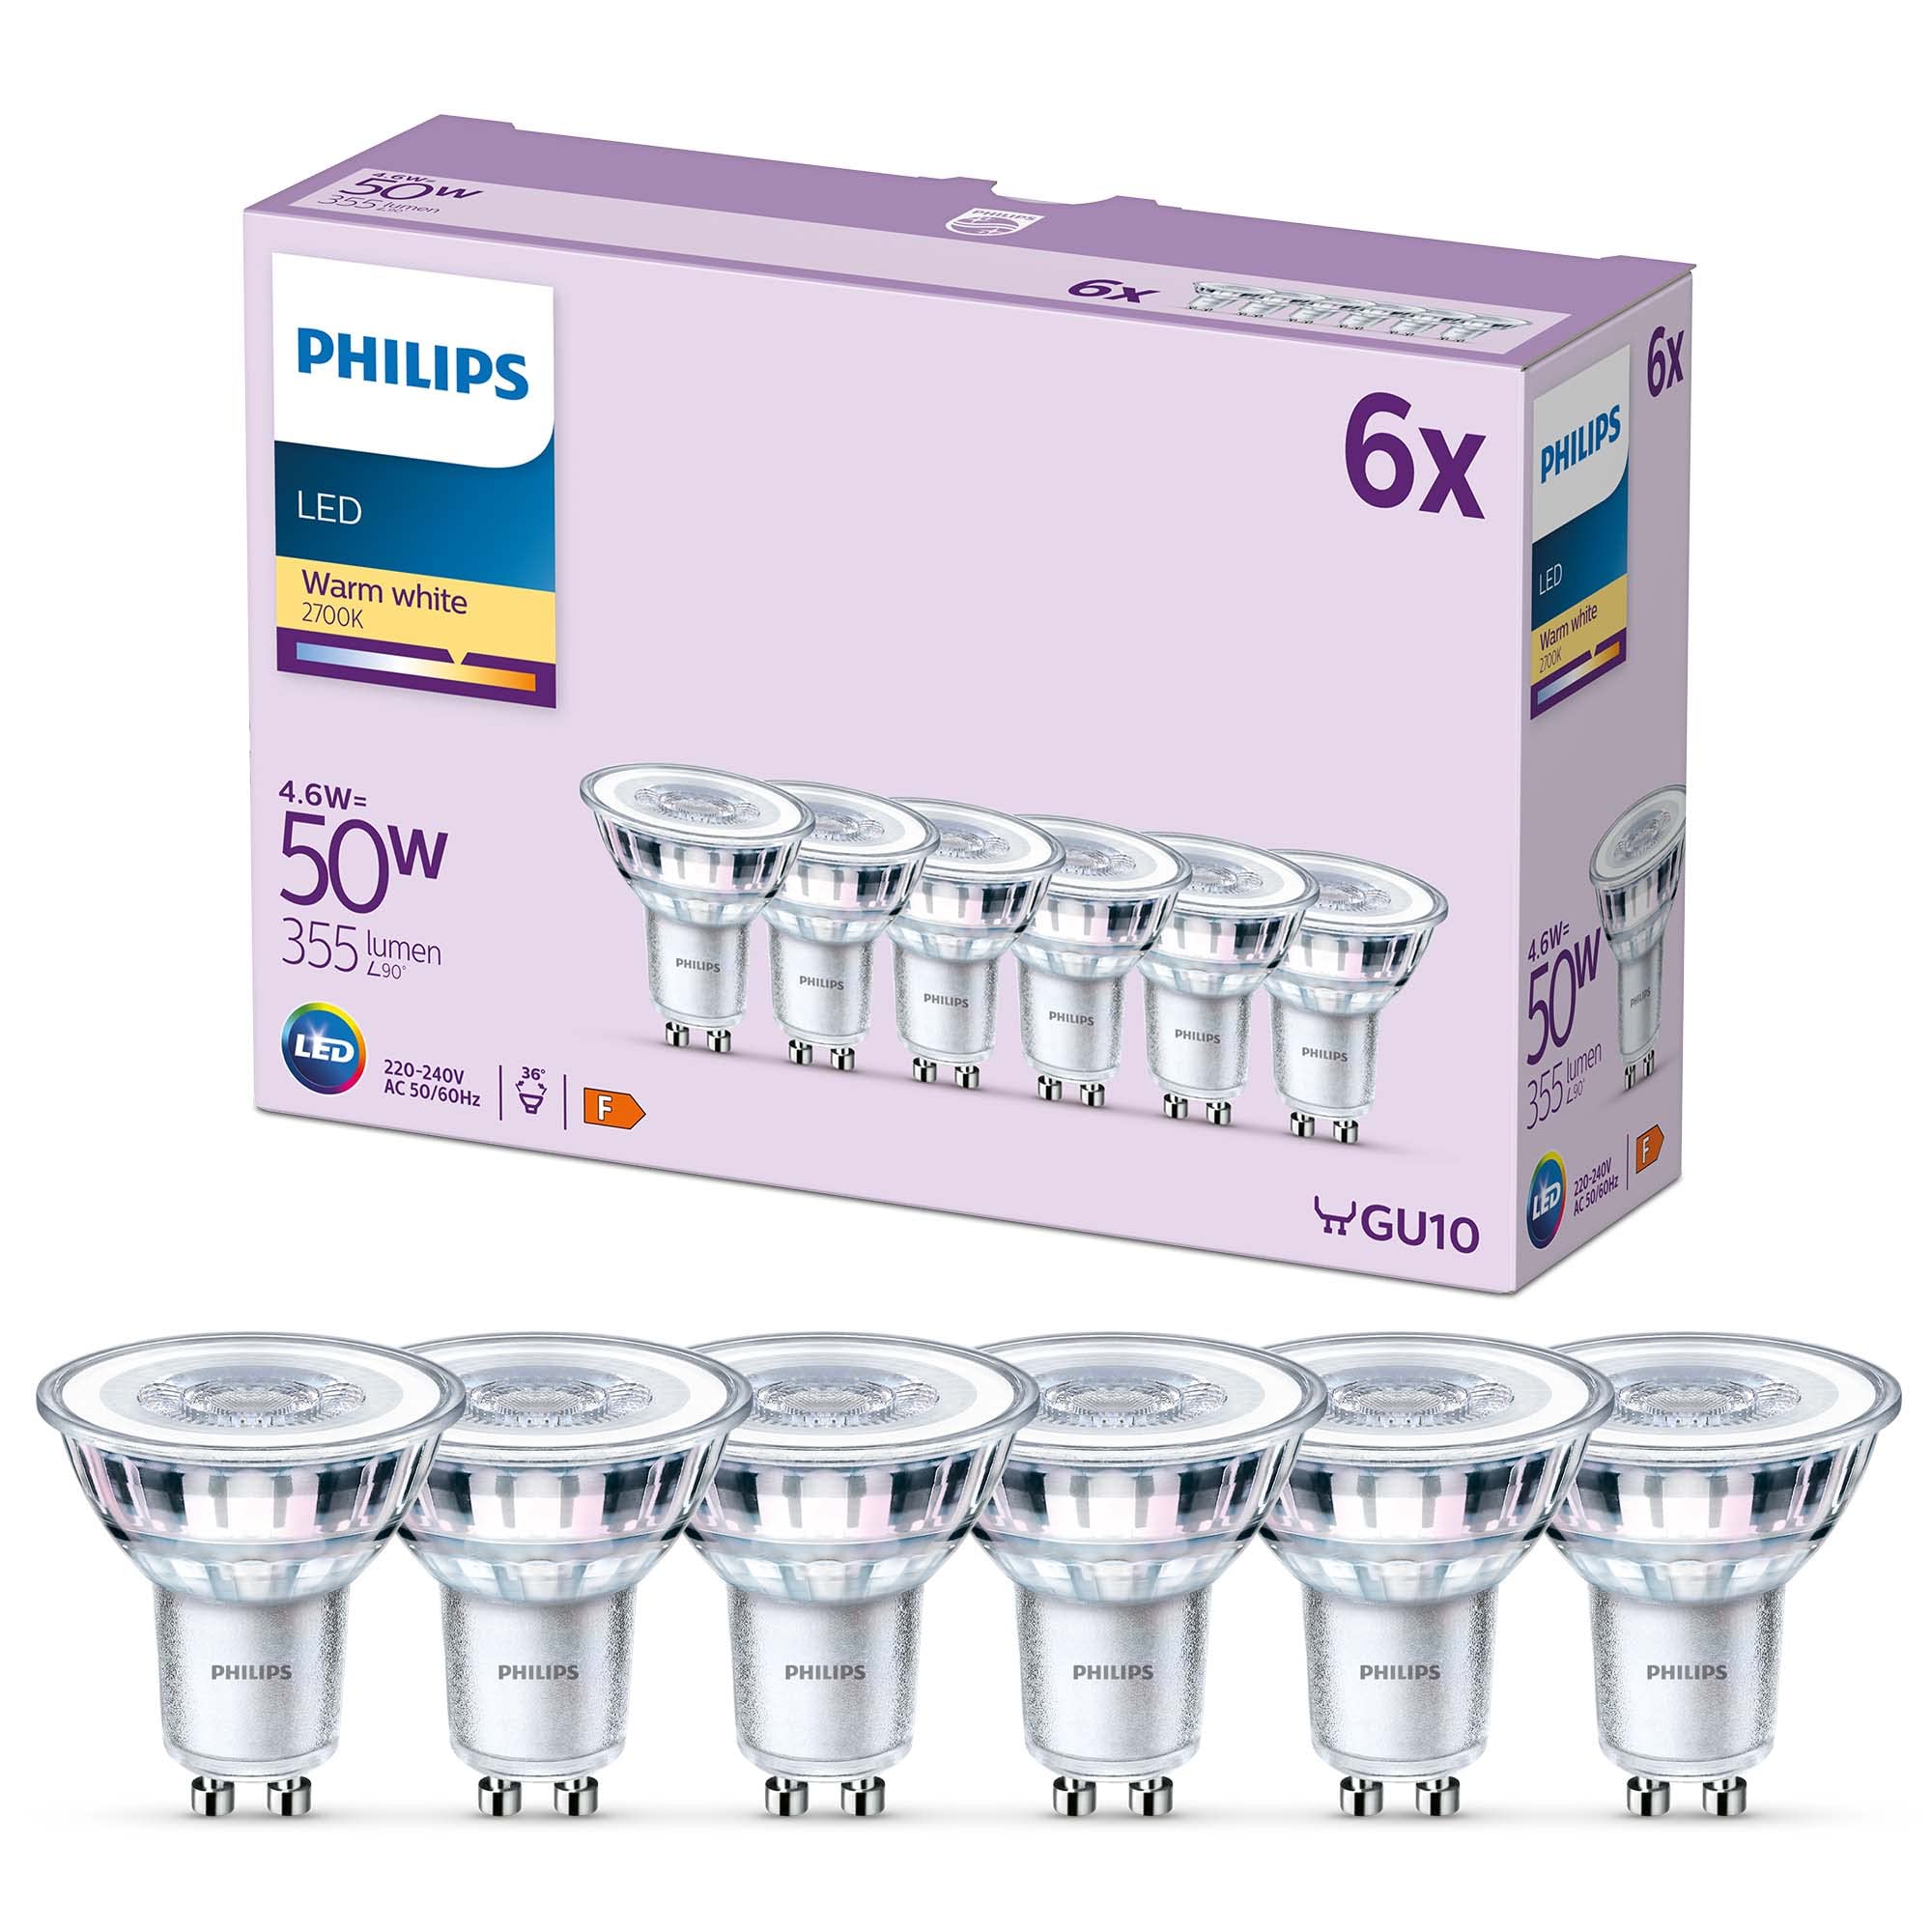 Populaire Philips pack de 6 ampoules LED GU10, 50W, blanc chaud he1FYePvS meilleure vente